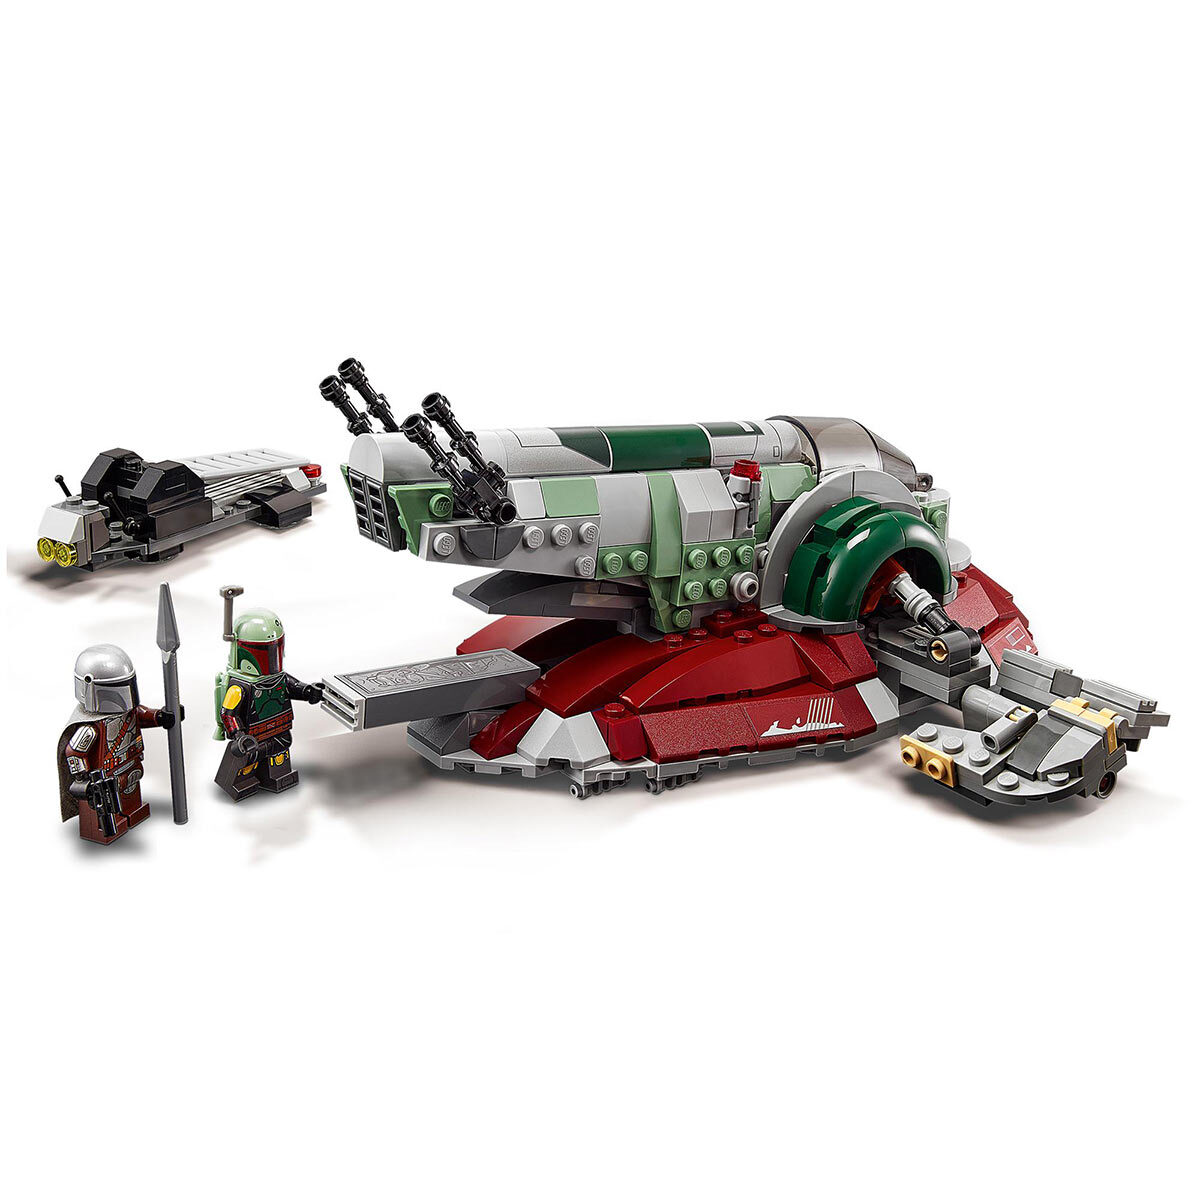 Buy LEGO Star Wars Boba Fett's Starship Lifestyle Image at Costco.co.uk